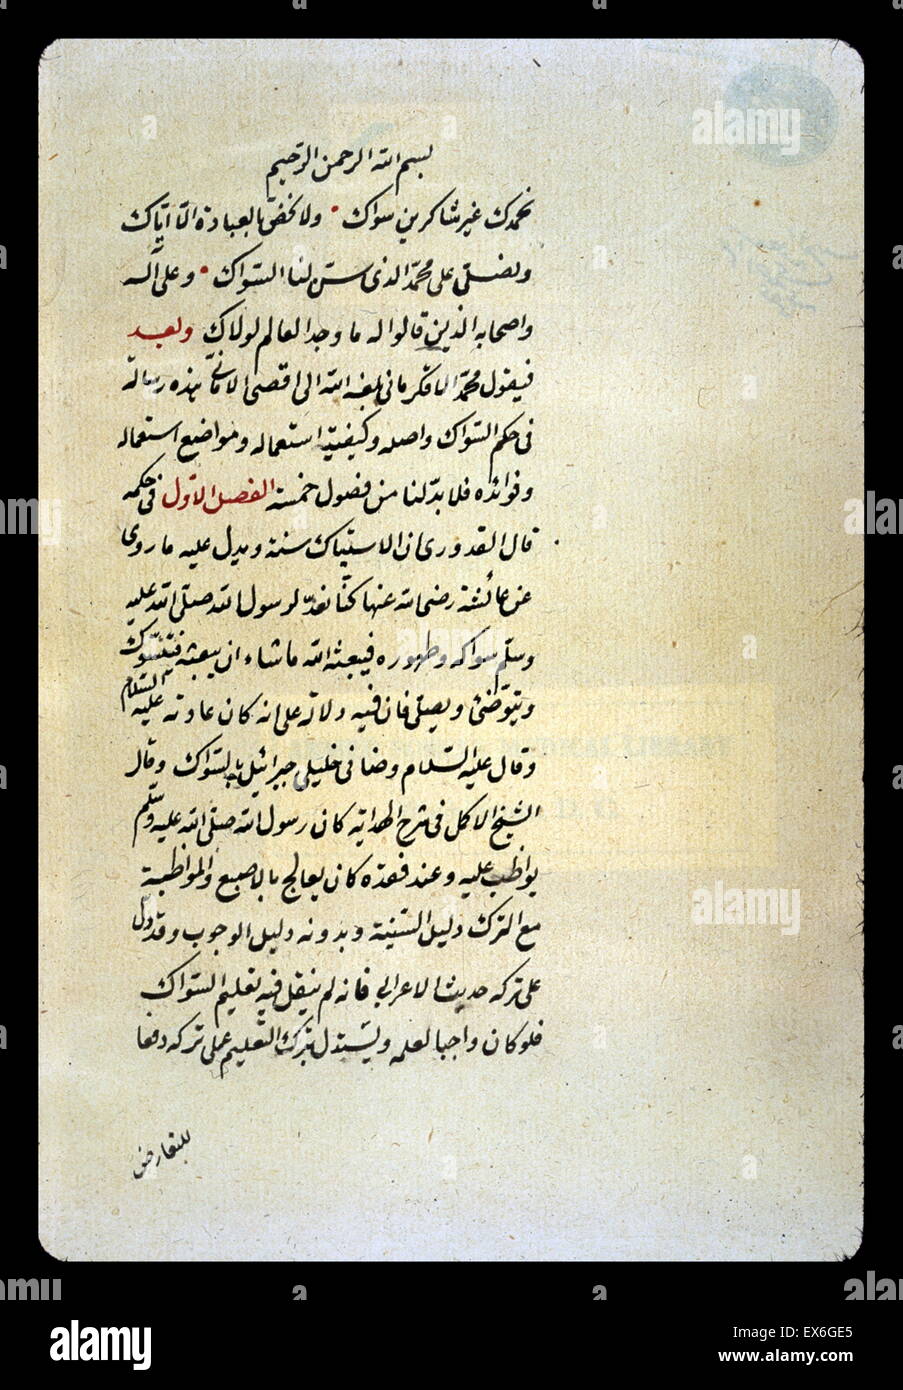 L'ouverture d'un essai en arabe sur l'utilisation de la brosse à dents  (siwak) écrit par Mu ?mounir al- ?qkirm ?n ? Au milieu du 18ème siècle.  Aucune autre copie est enregistrée. La